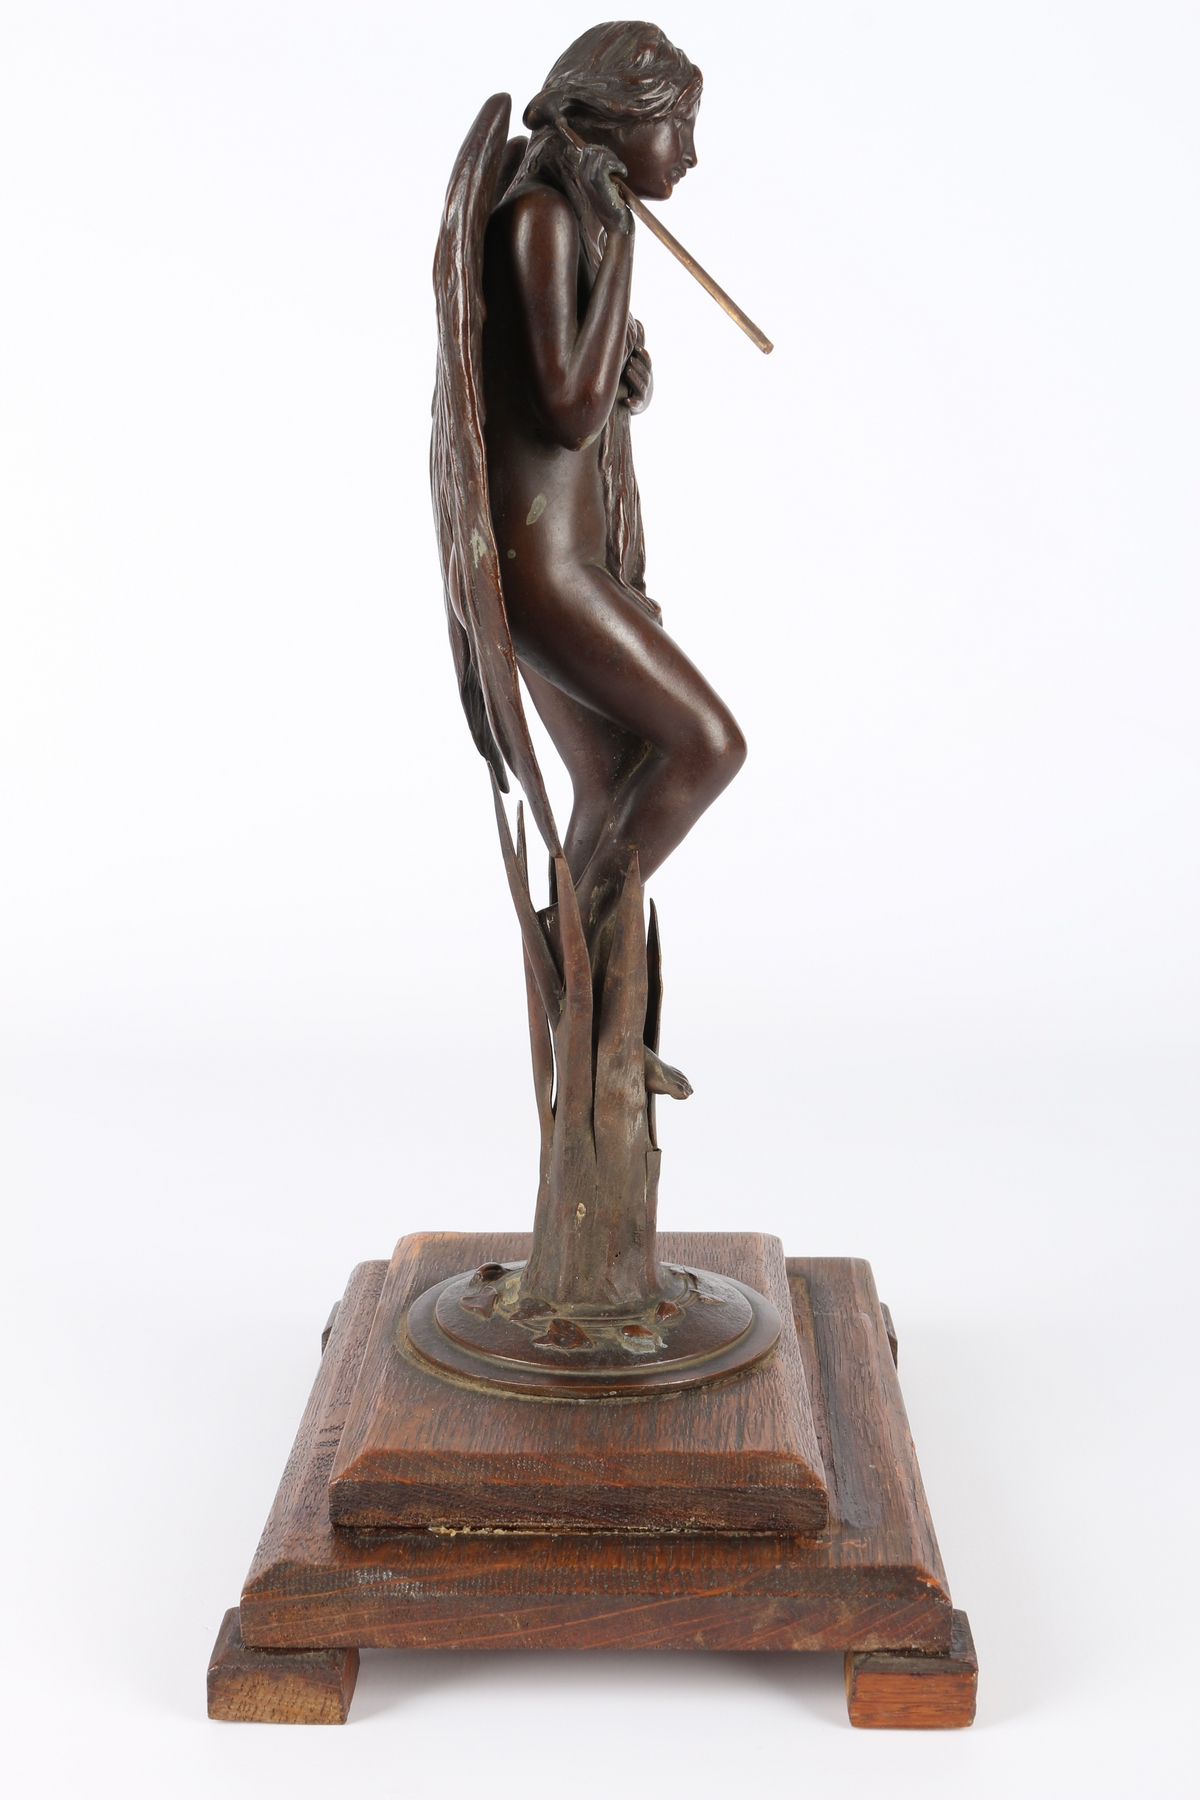 Bronze Engel mit Fanfare um 1900, bronce angel with trumpet around 1900, - Image 4 of 5